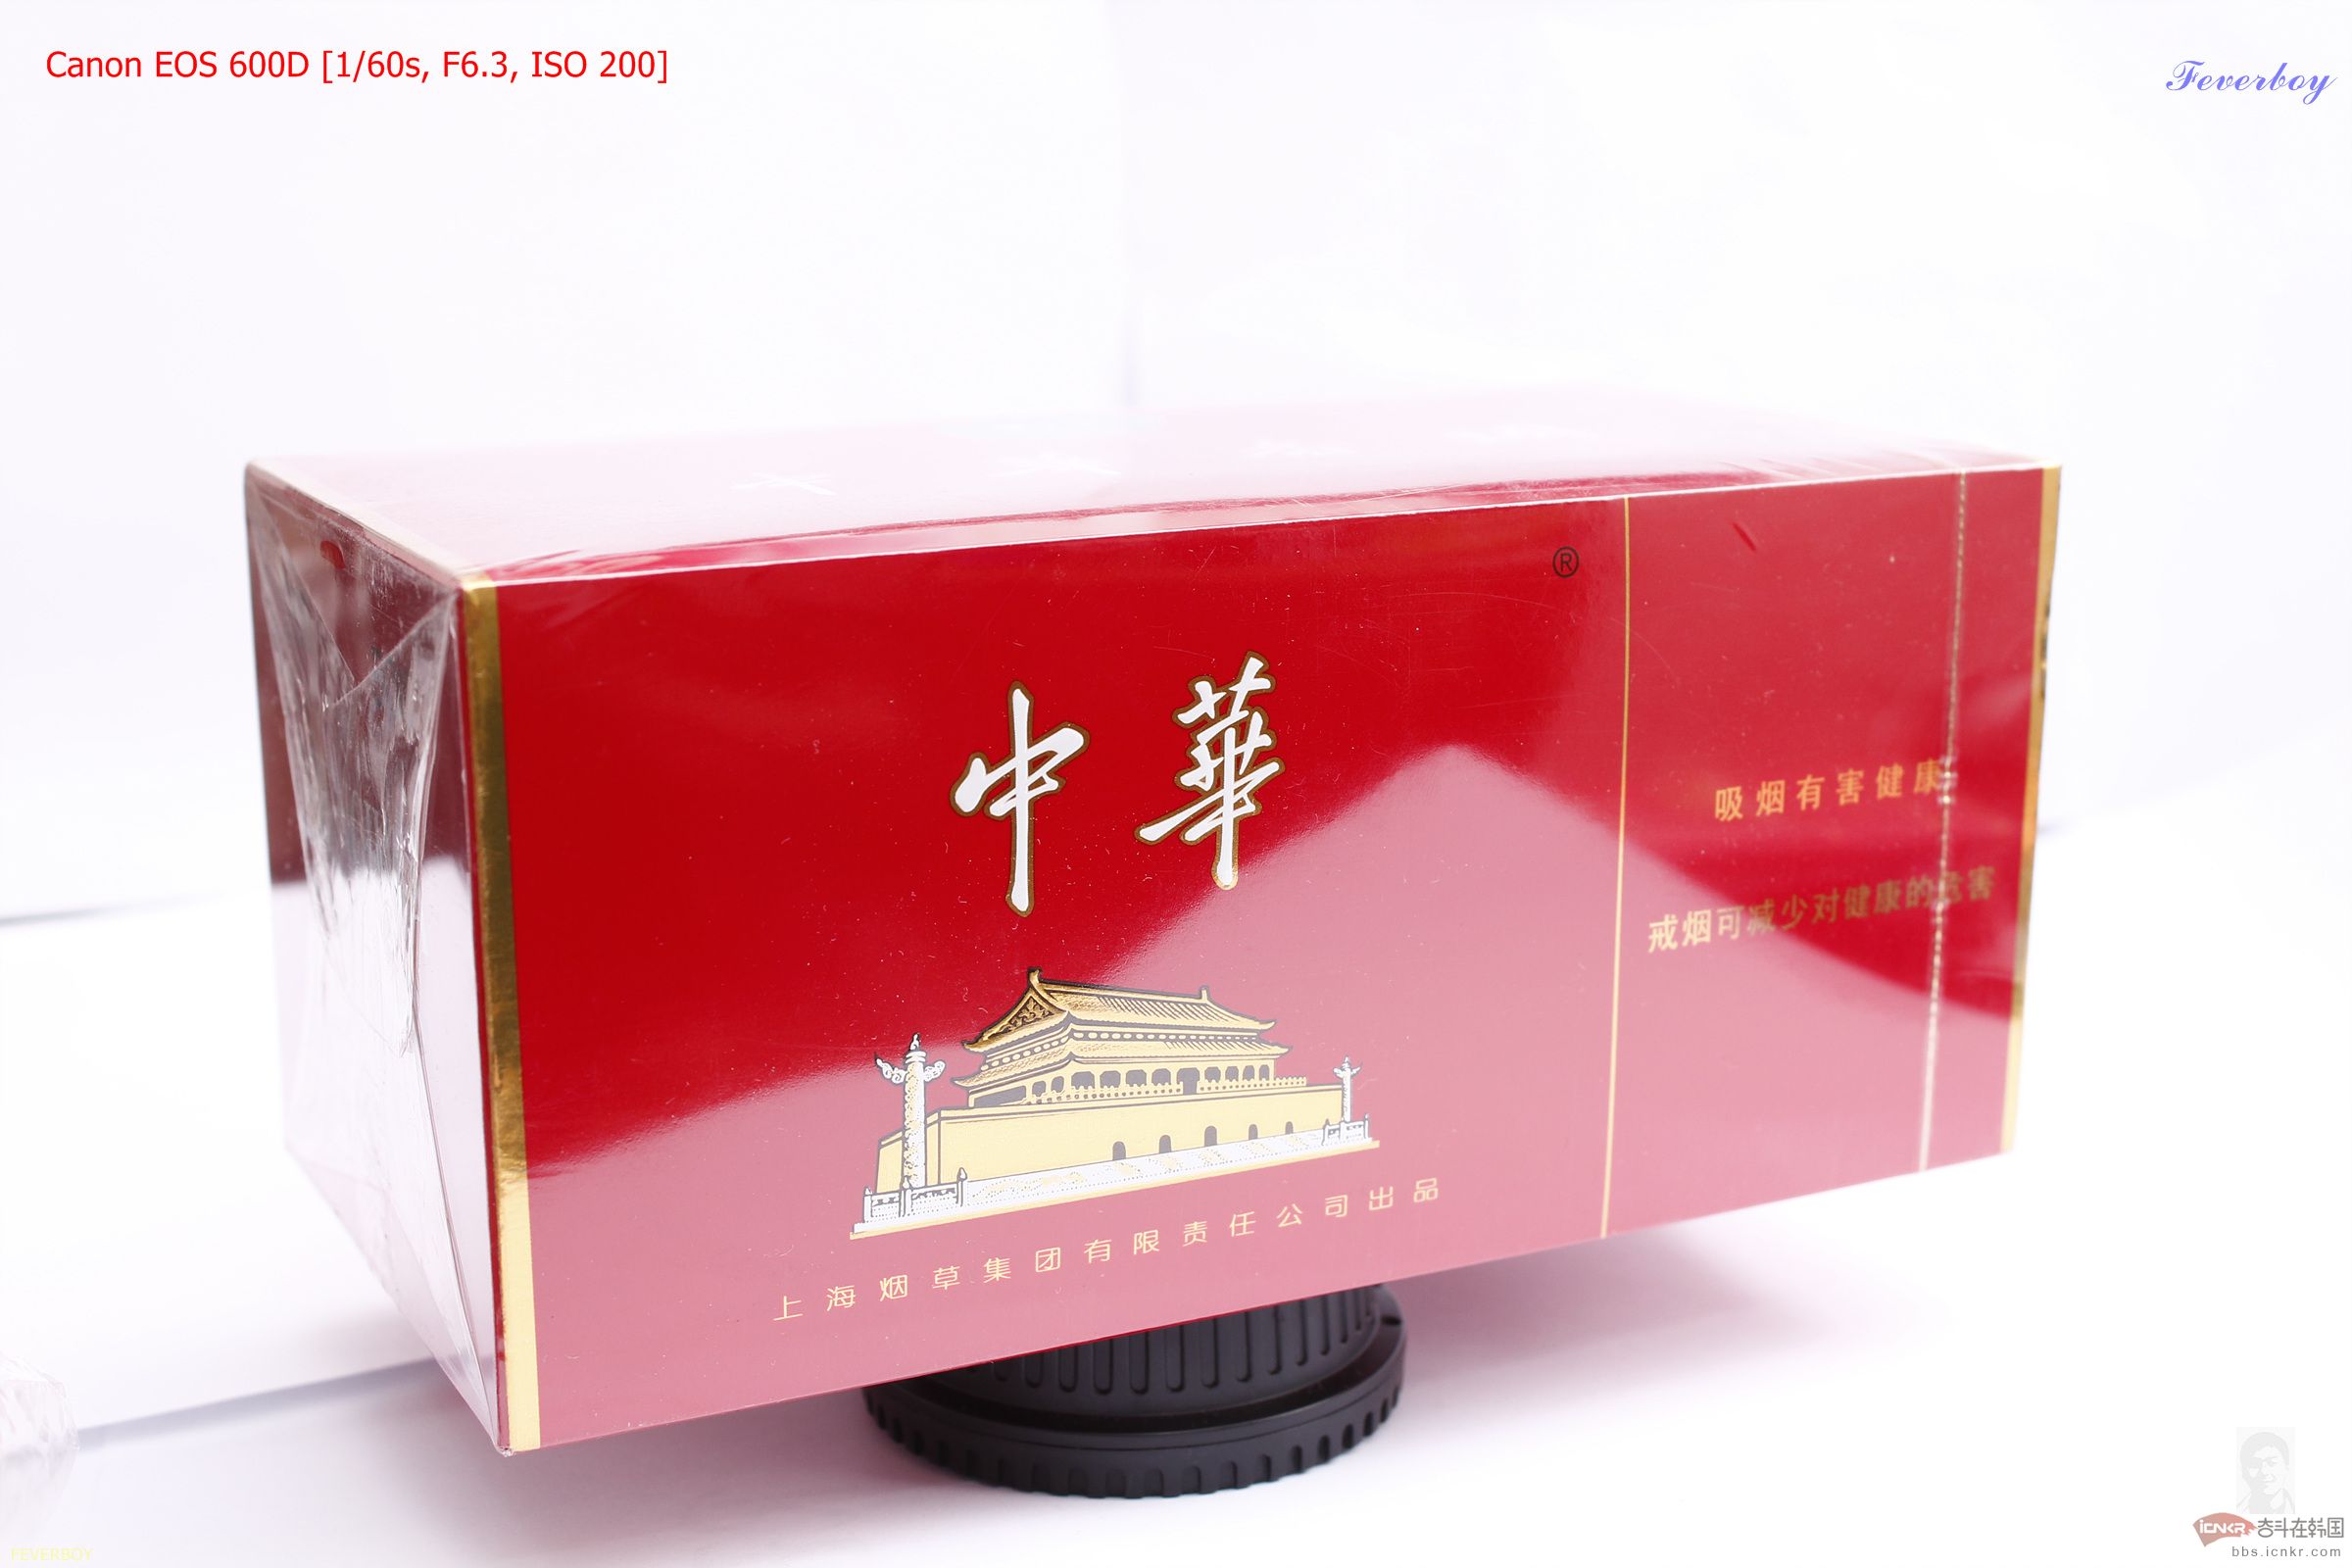 中华烟长条扁盒图片图片